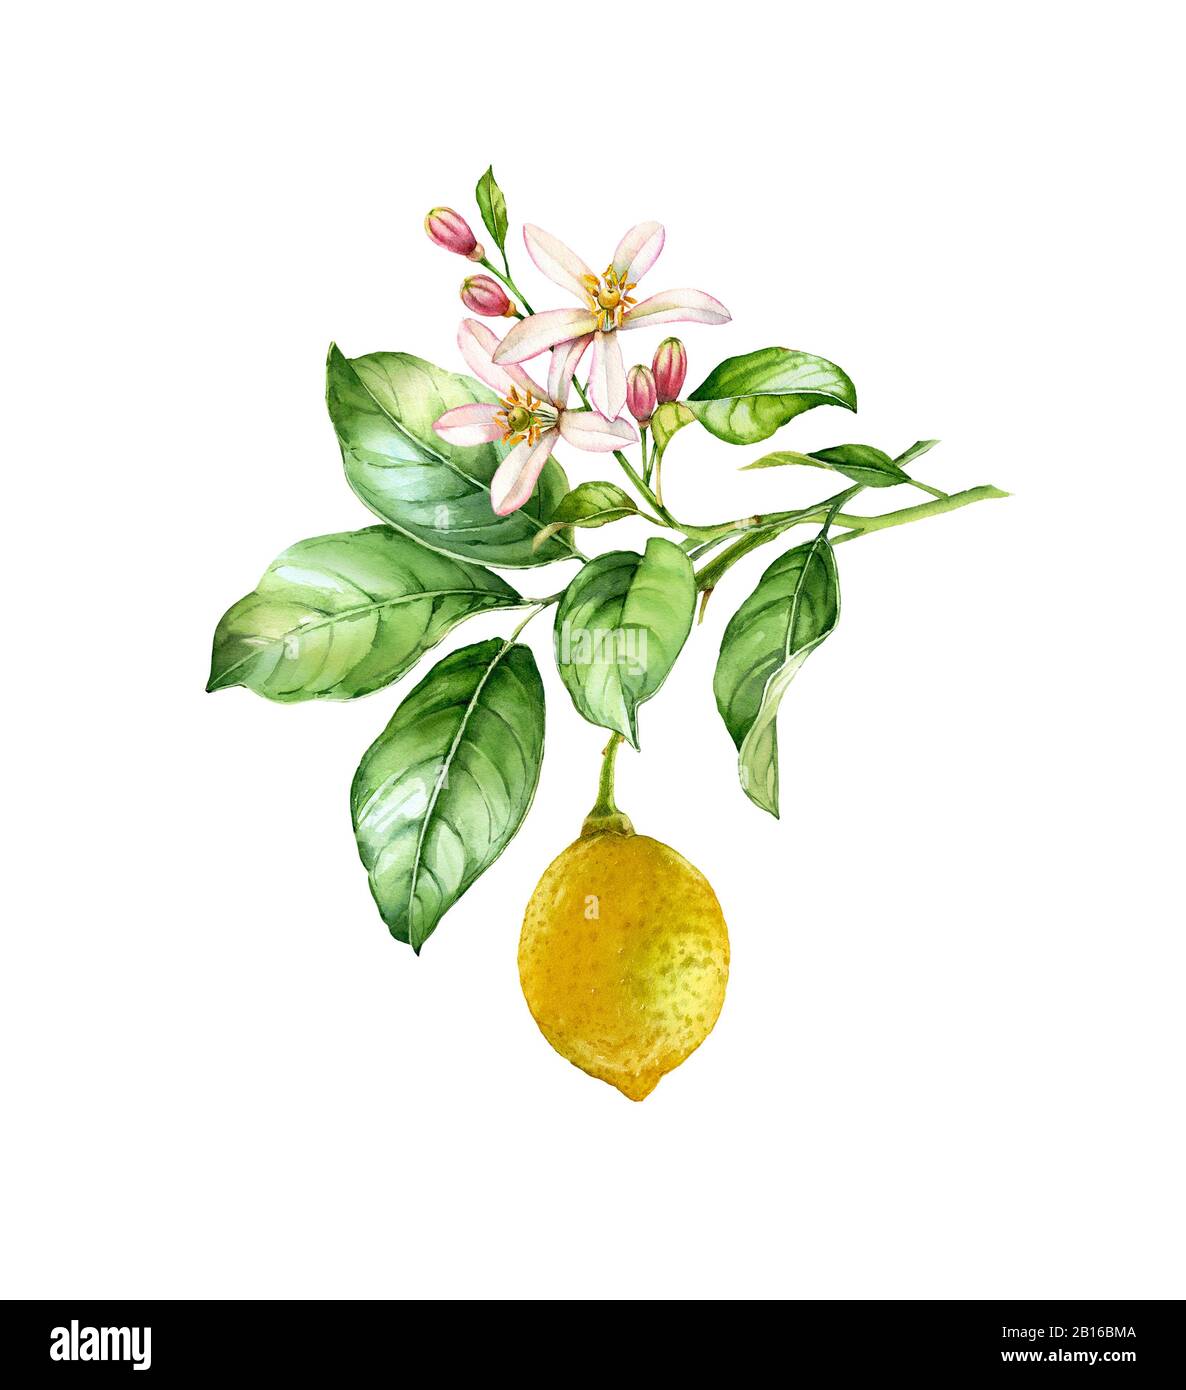 Aquarell Lemon Branch. Realistischer Zitrusfruchtsbaum mit Blumen, Blättern. Botanische Illustration. Isoliertes Bildmaterial auf weiß. Handbemalt frisch Stockfoto